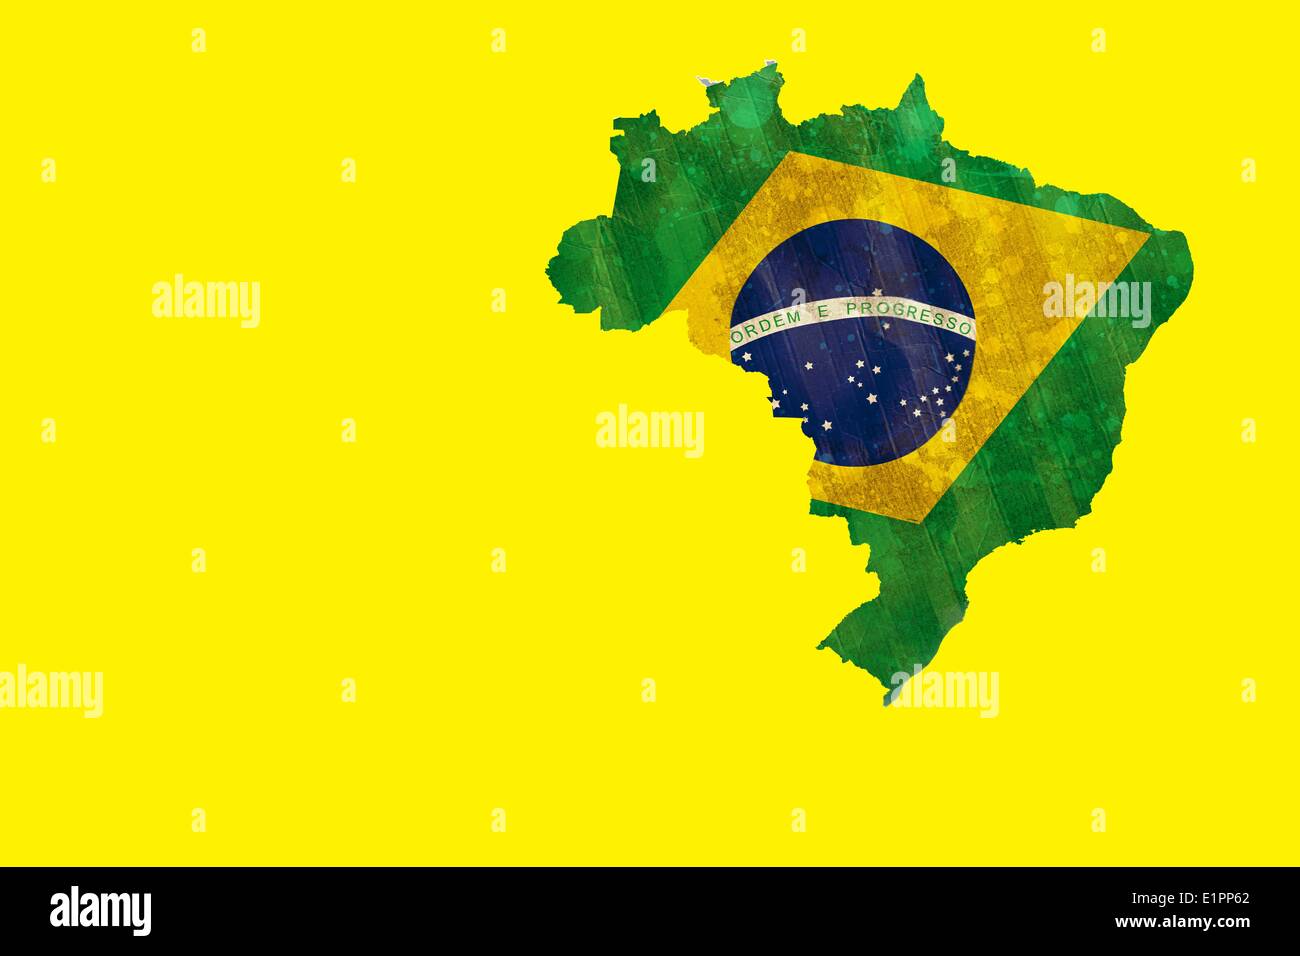 Le Brésil avec contour vert jaune sur le drapeau Banque D'Images